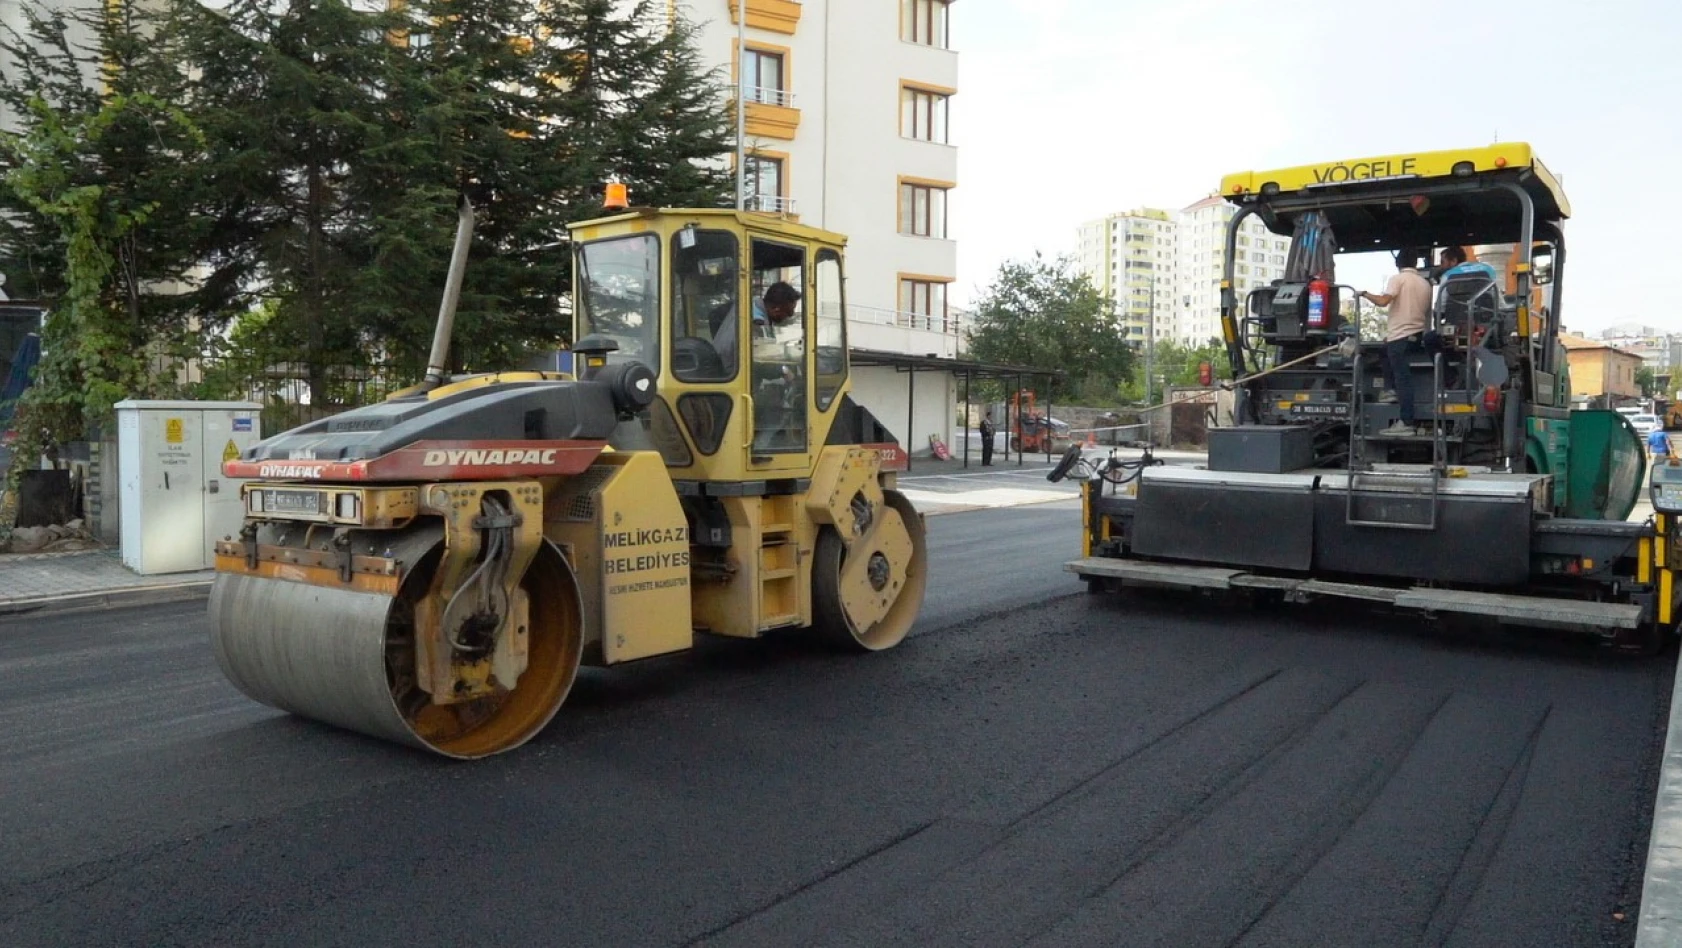 6 bin ton sıcak asfalt kullanılacak yol çalışması başladı